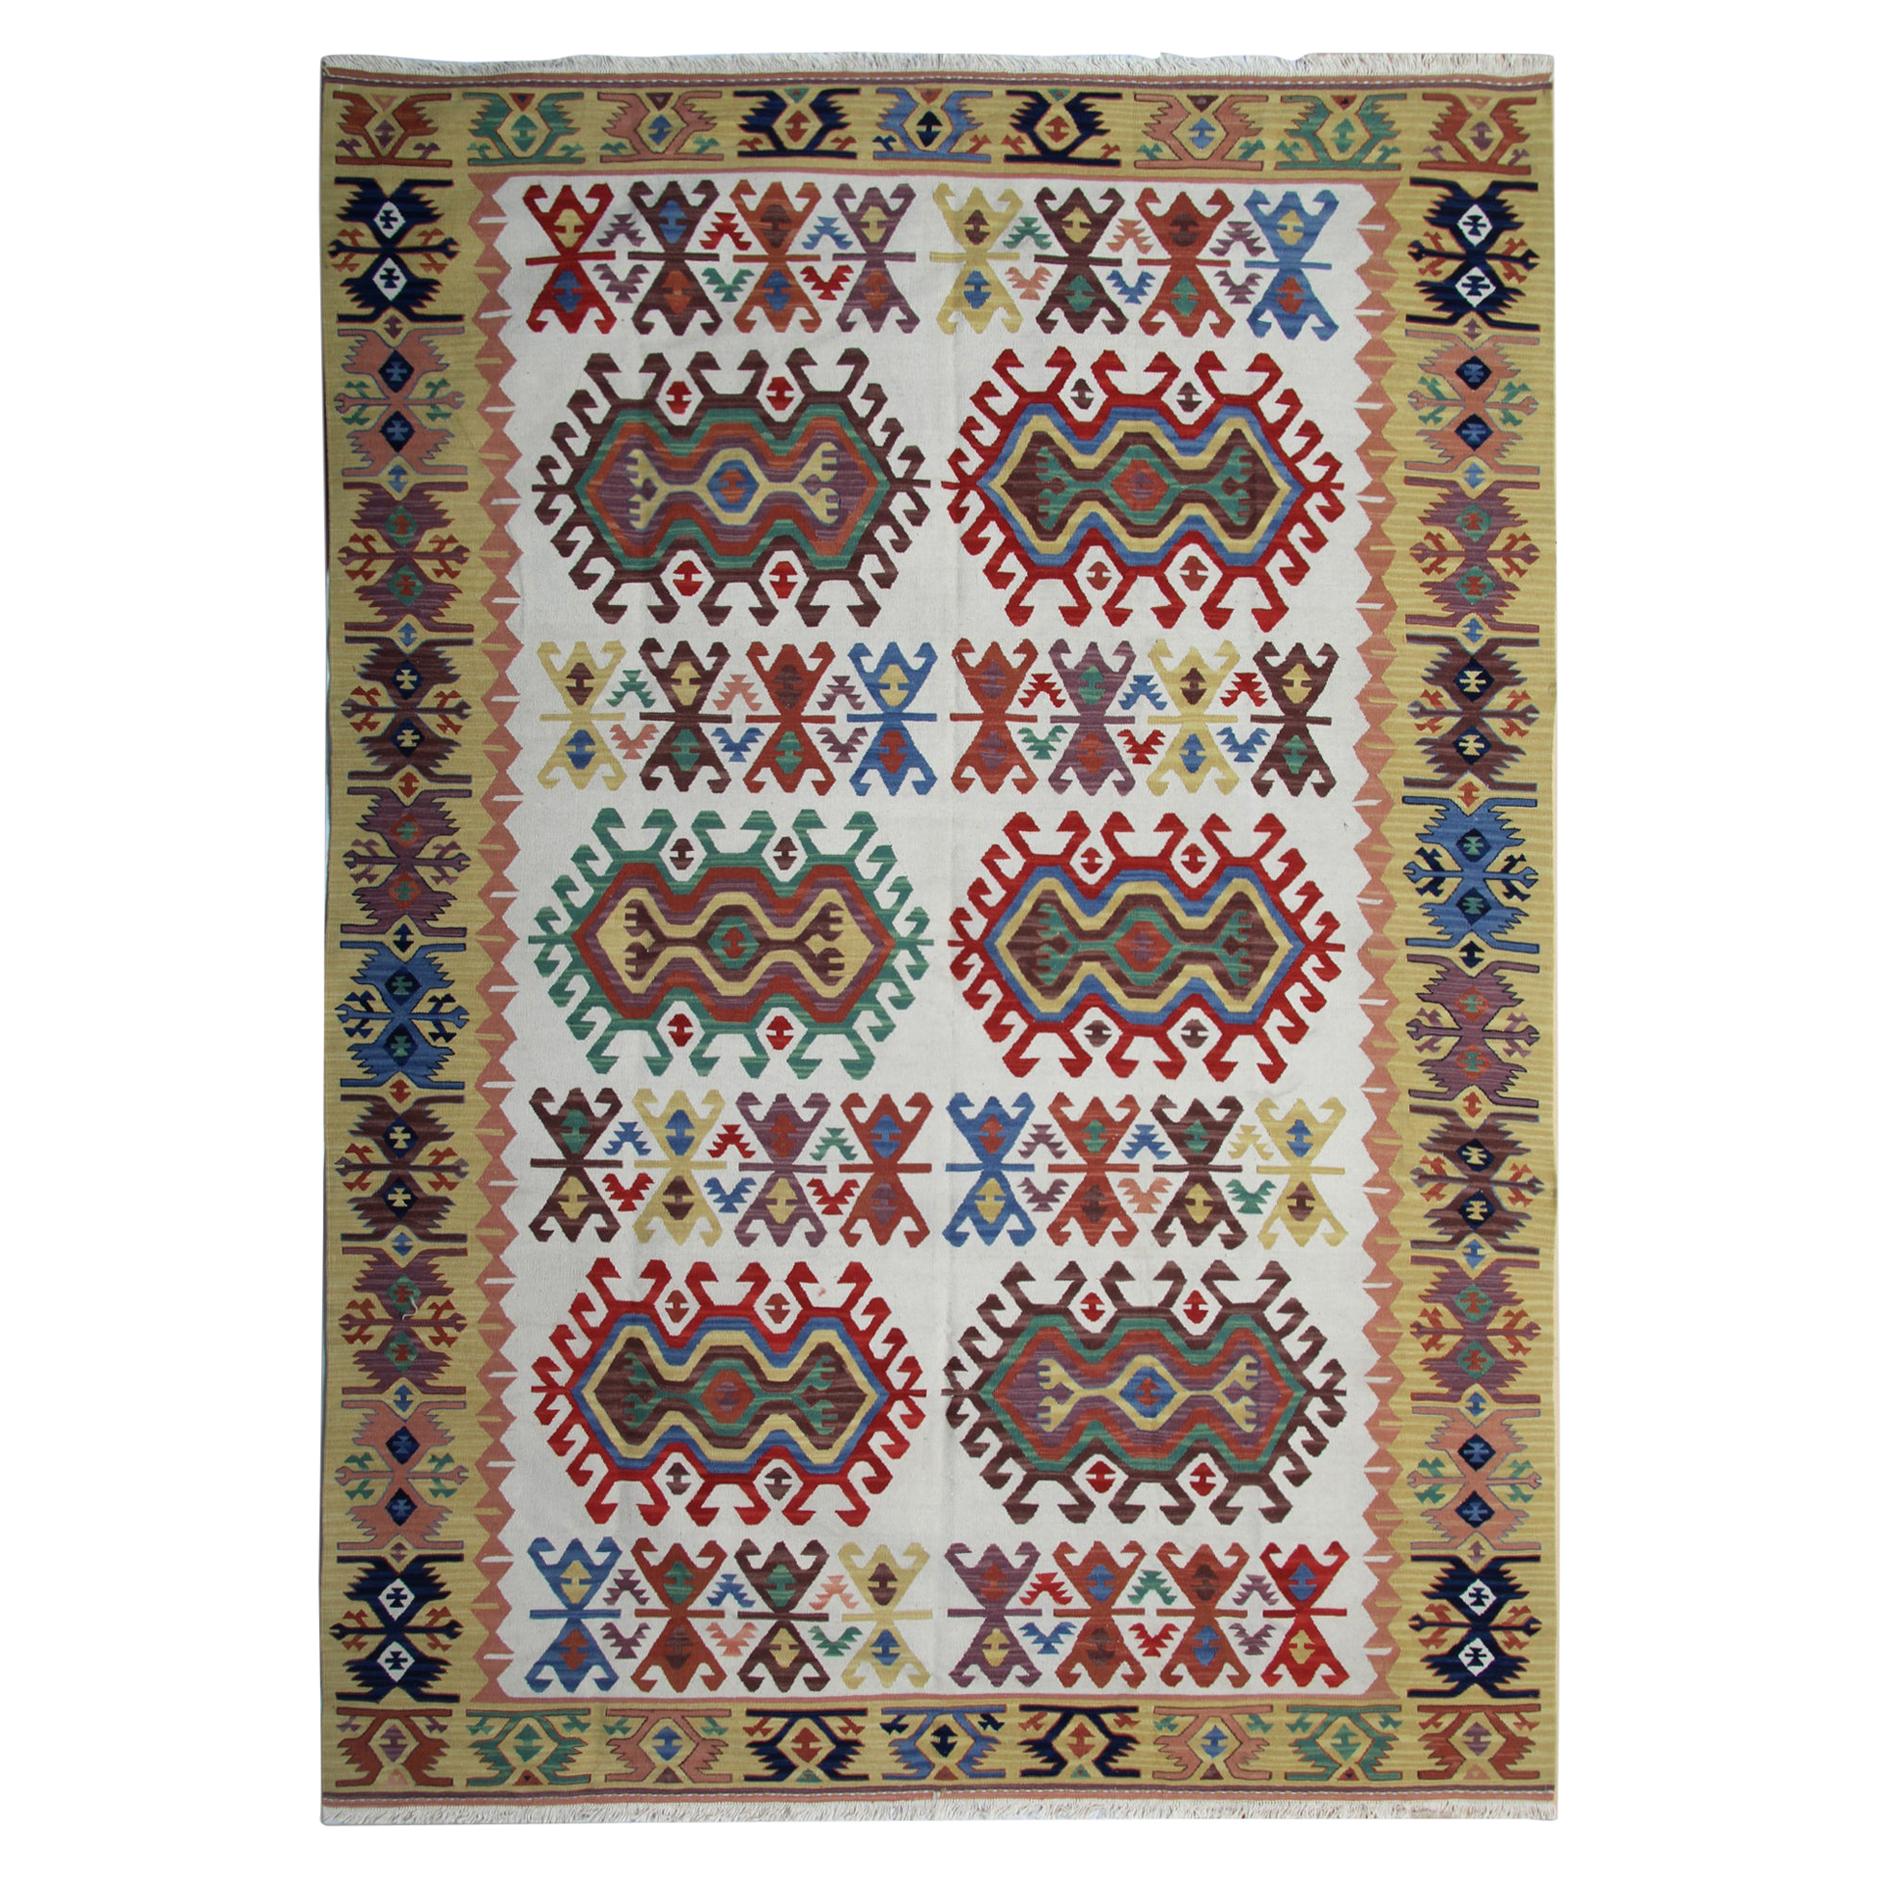 Handgefertigter Teppich, Stammeskunst, Kelim-Teppich, geometrischer grüner und cremefarbener Teppich